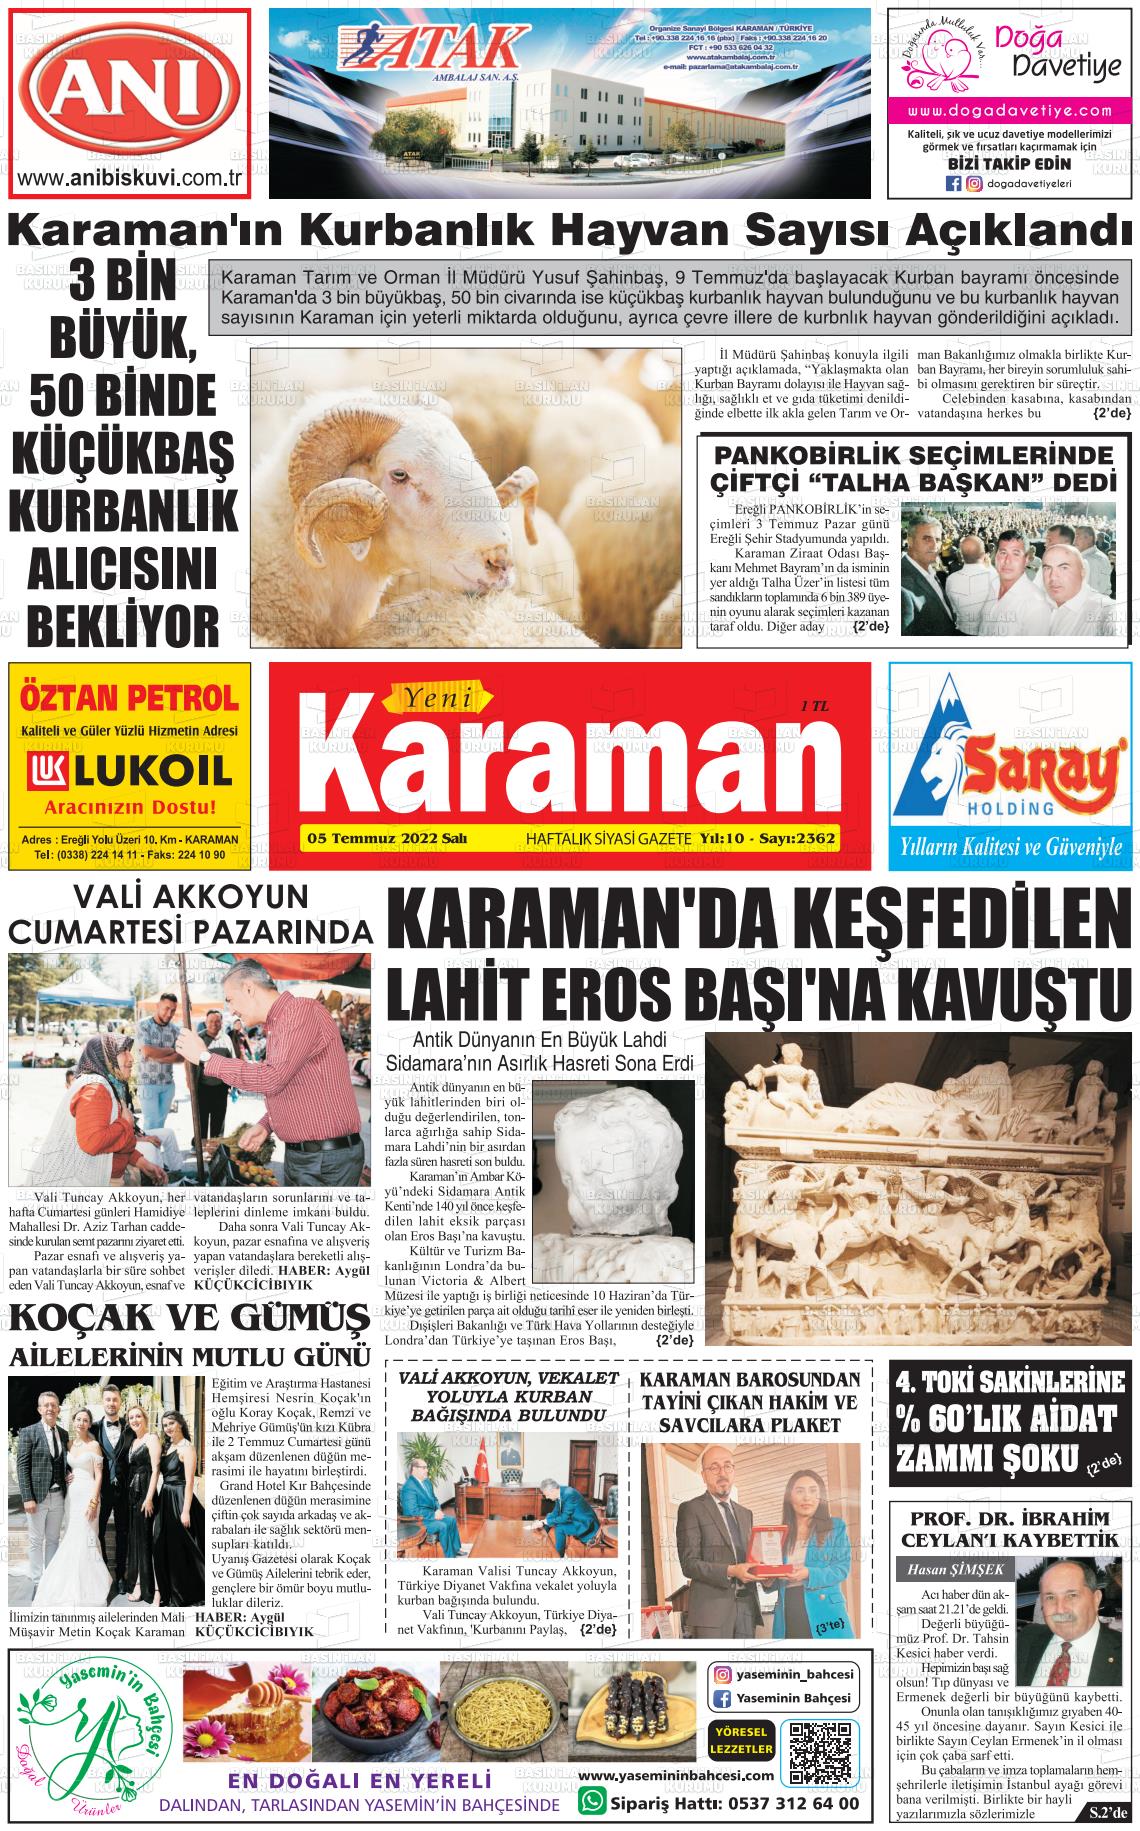 05 Temmuz 2022 Yeni Karaman Gazete Manşeti